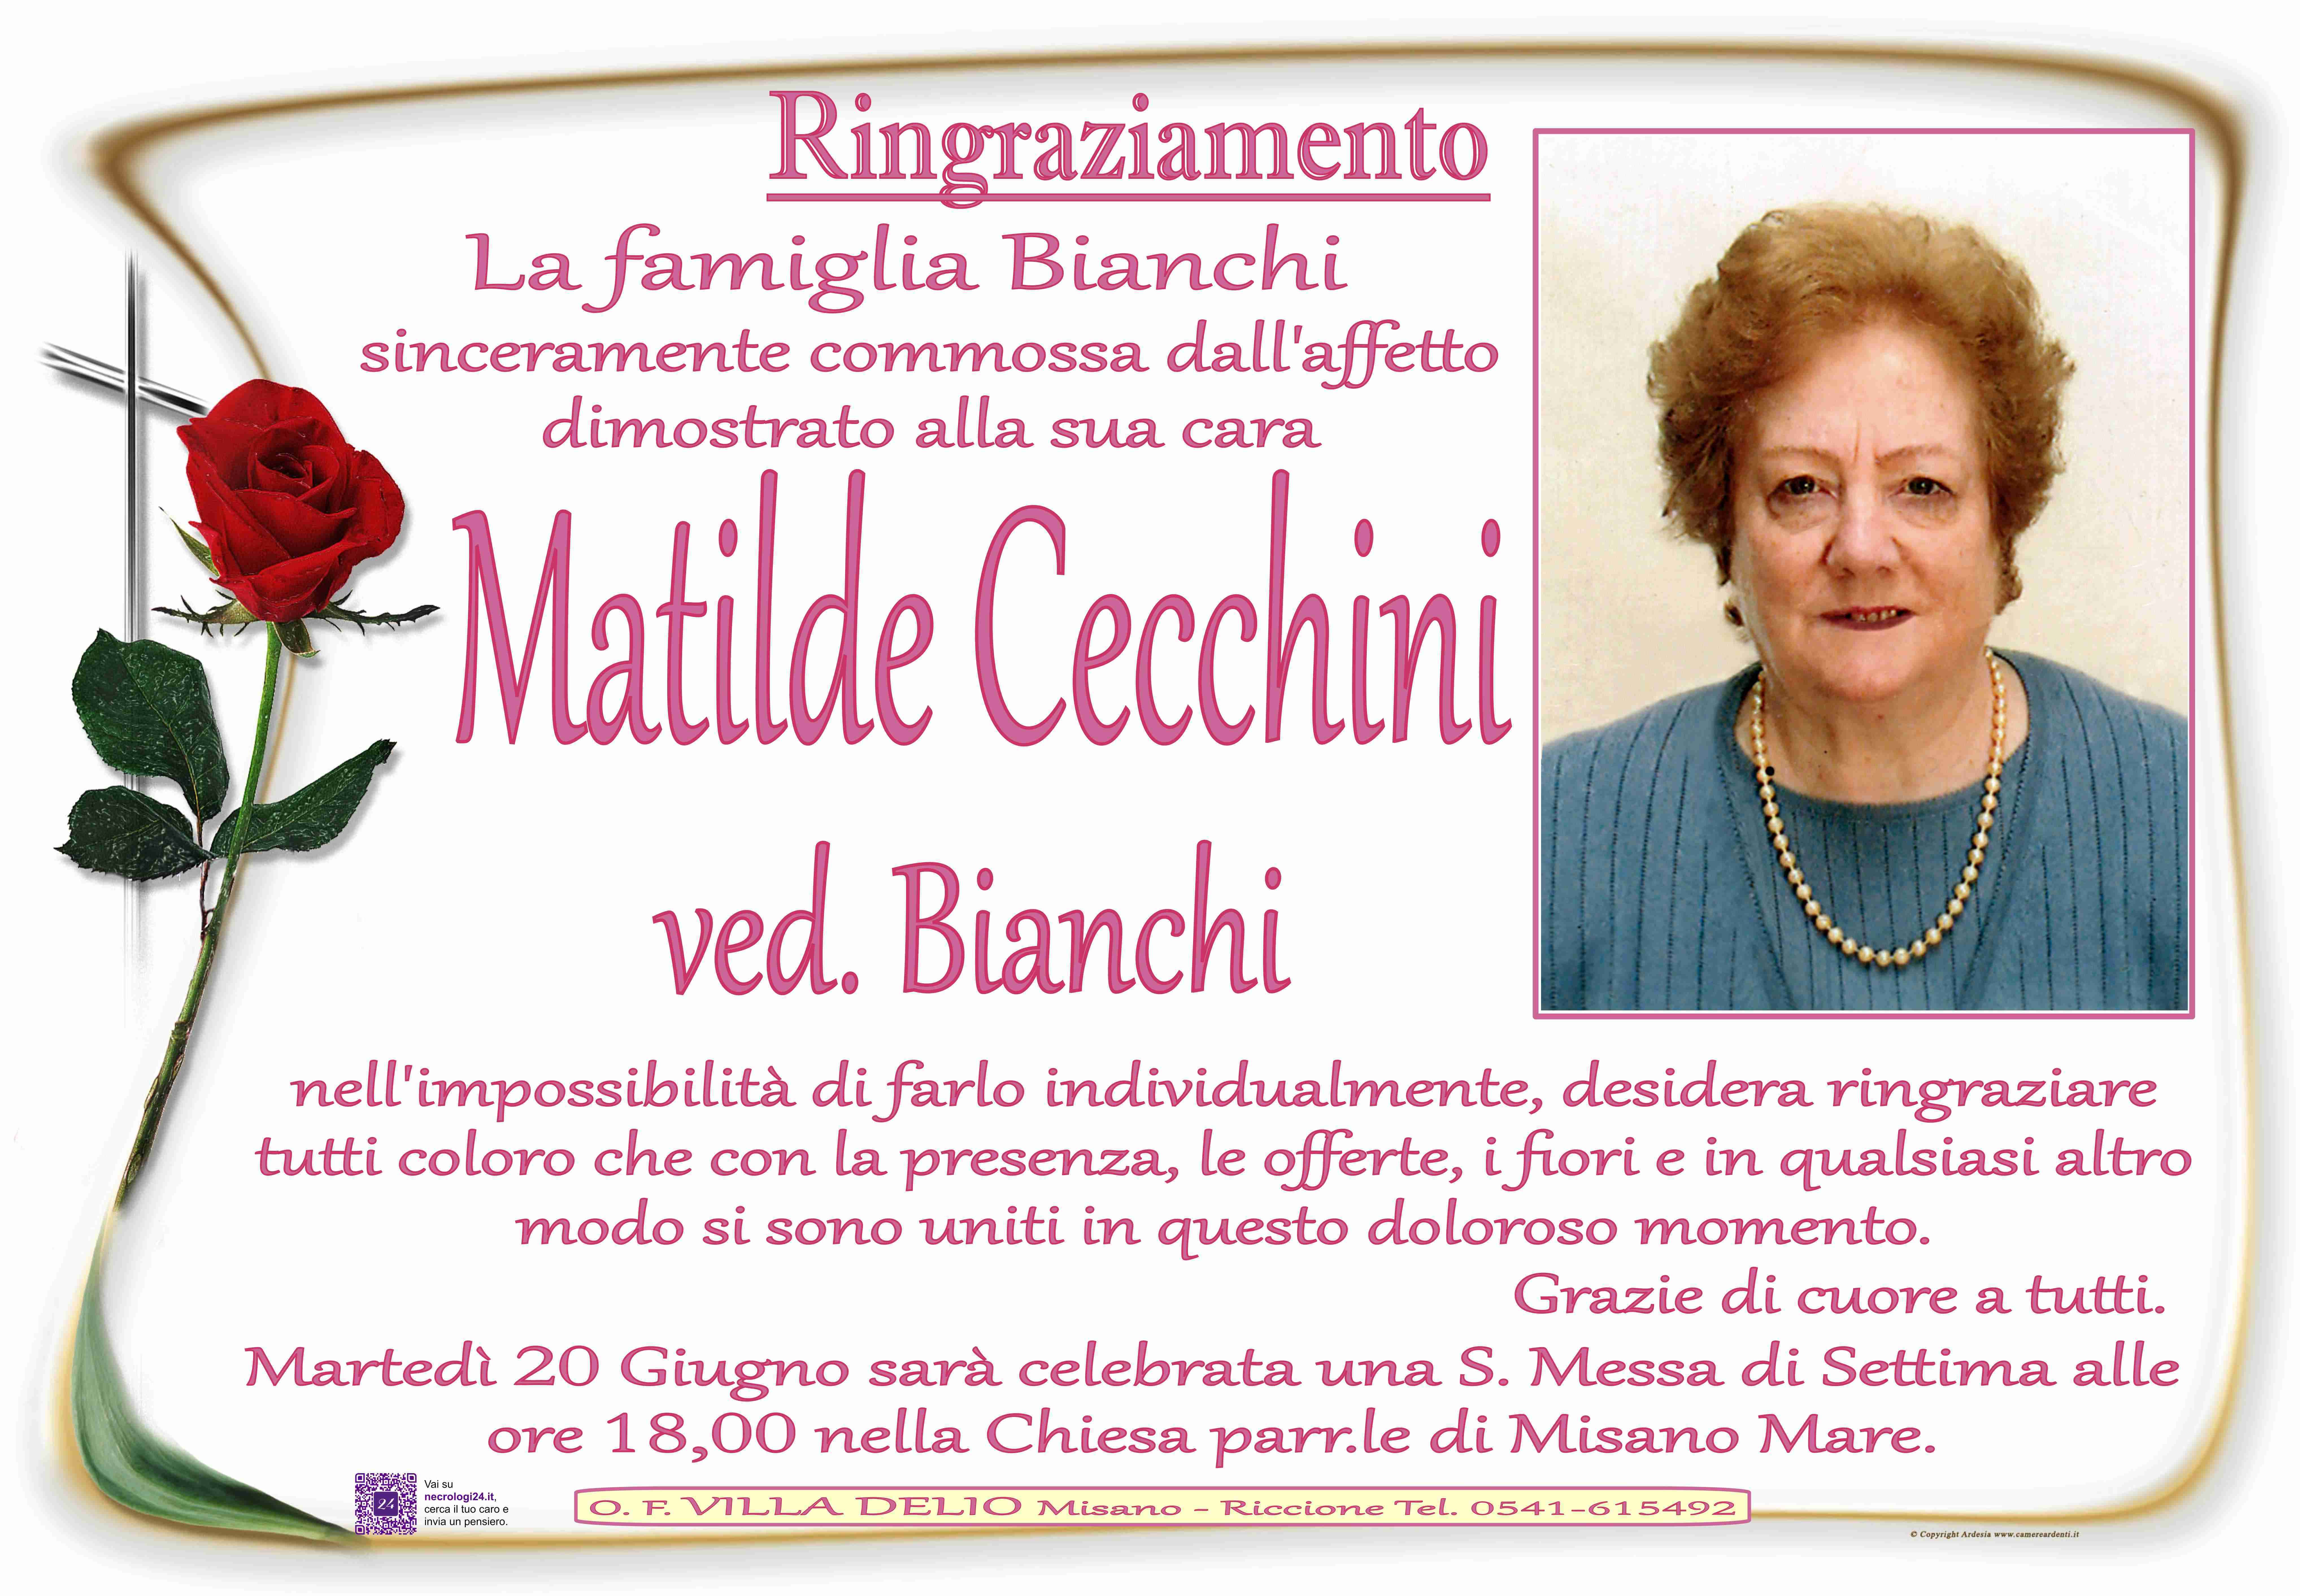 Matilde Cecchini